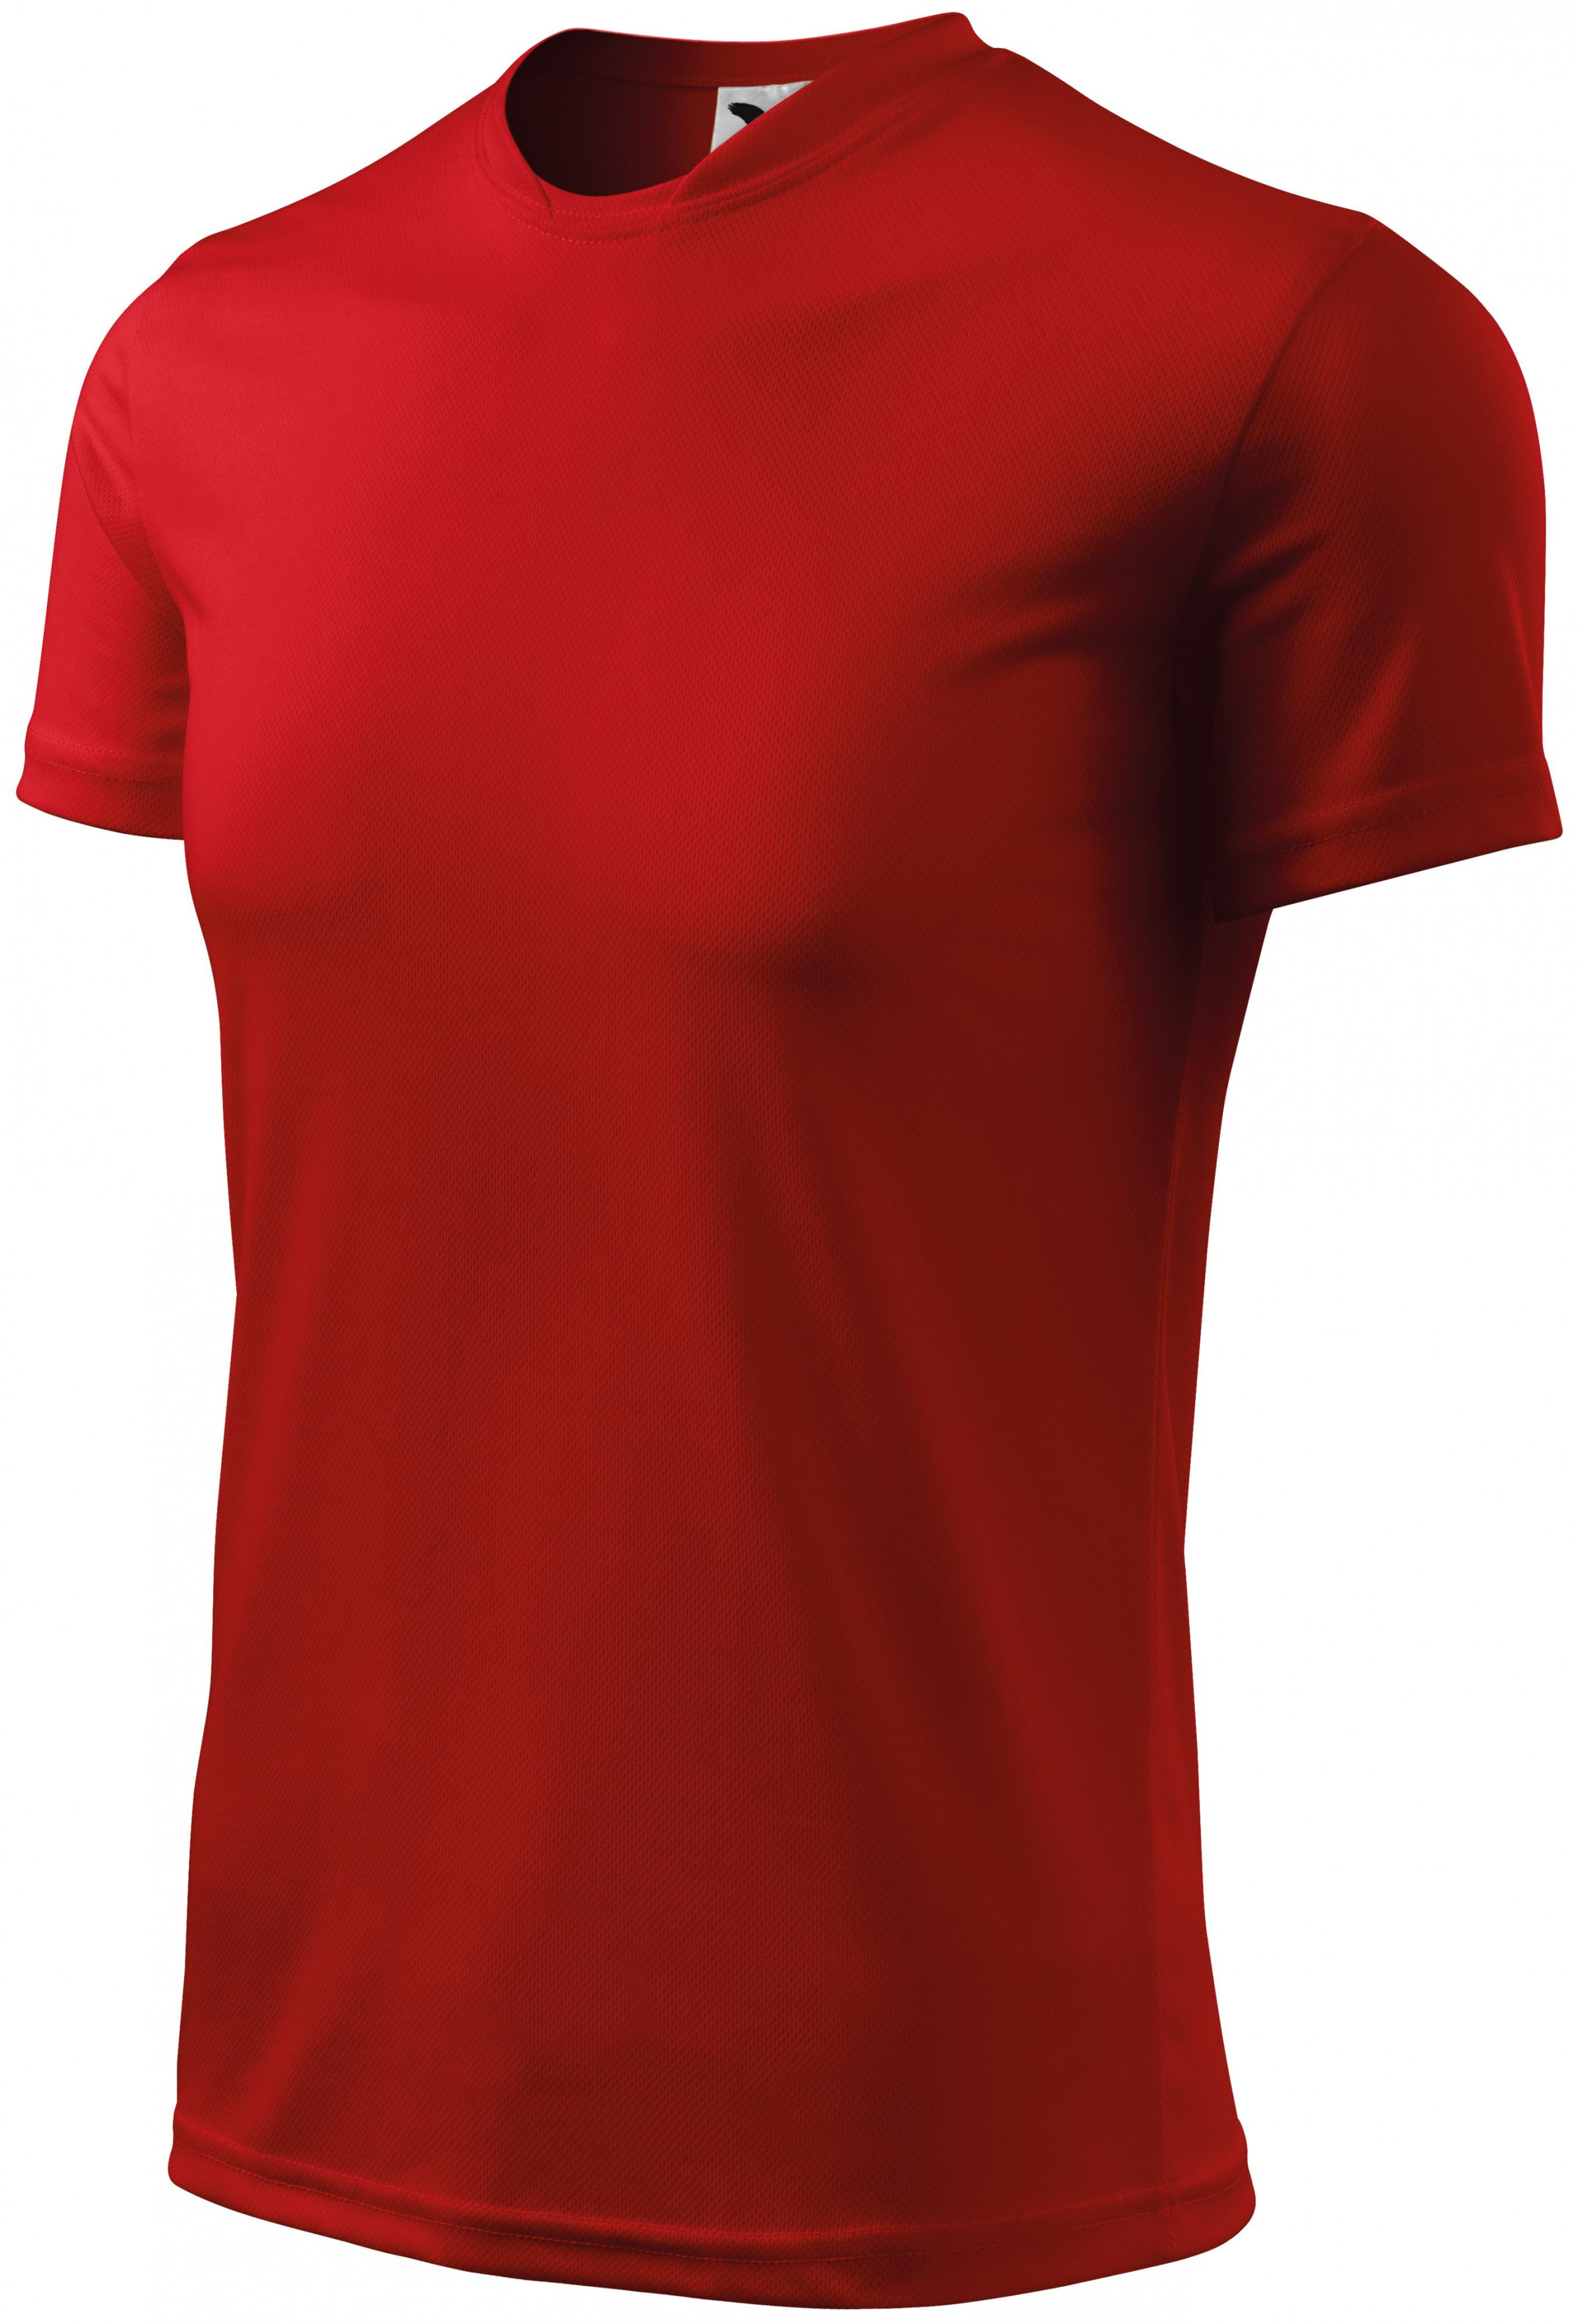 Športové tričko detské, červená, 158cm / 12rokov